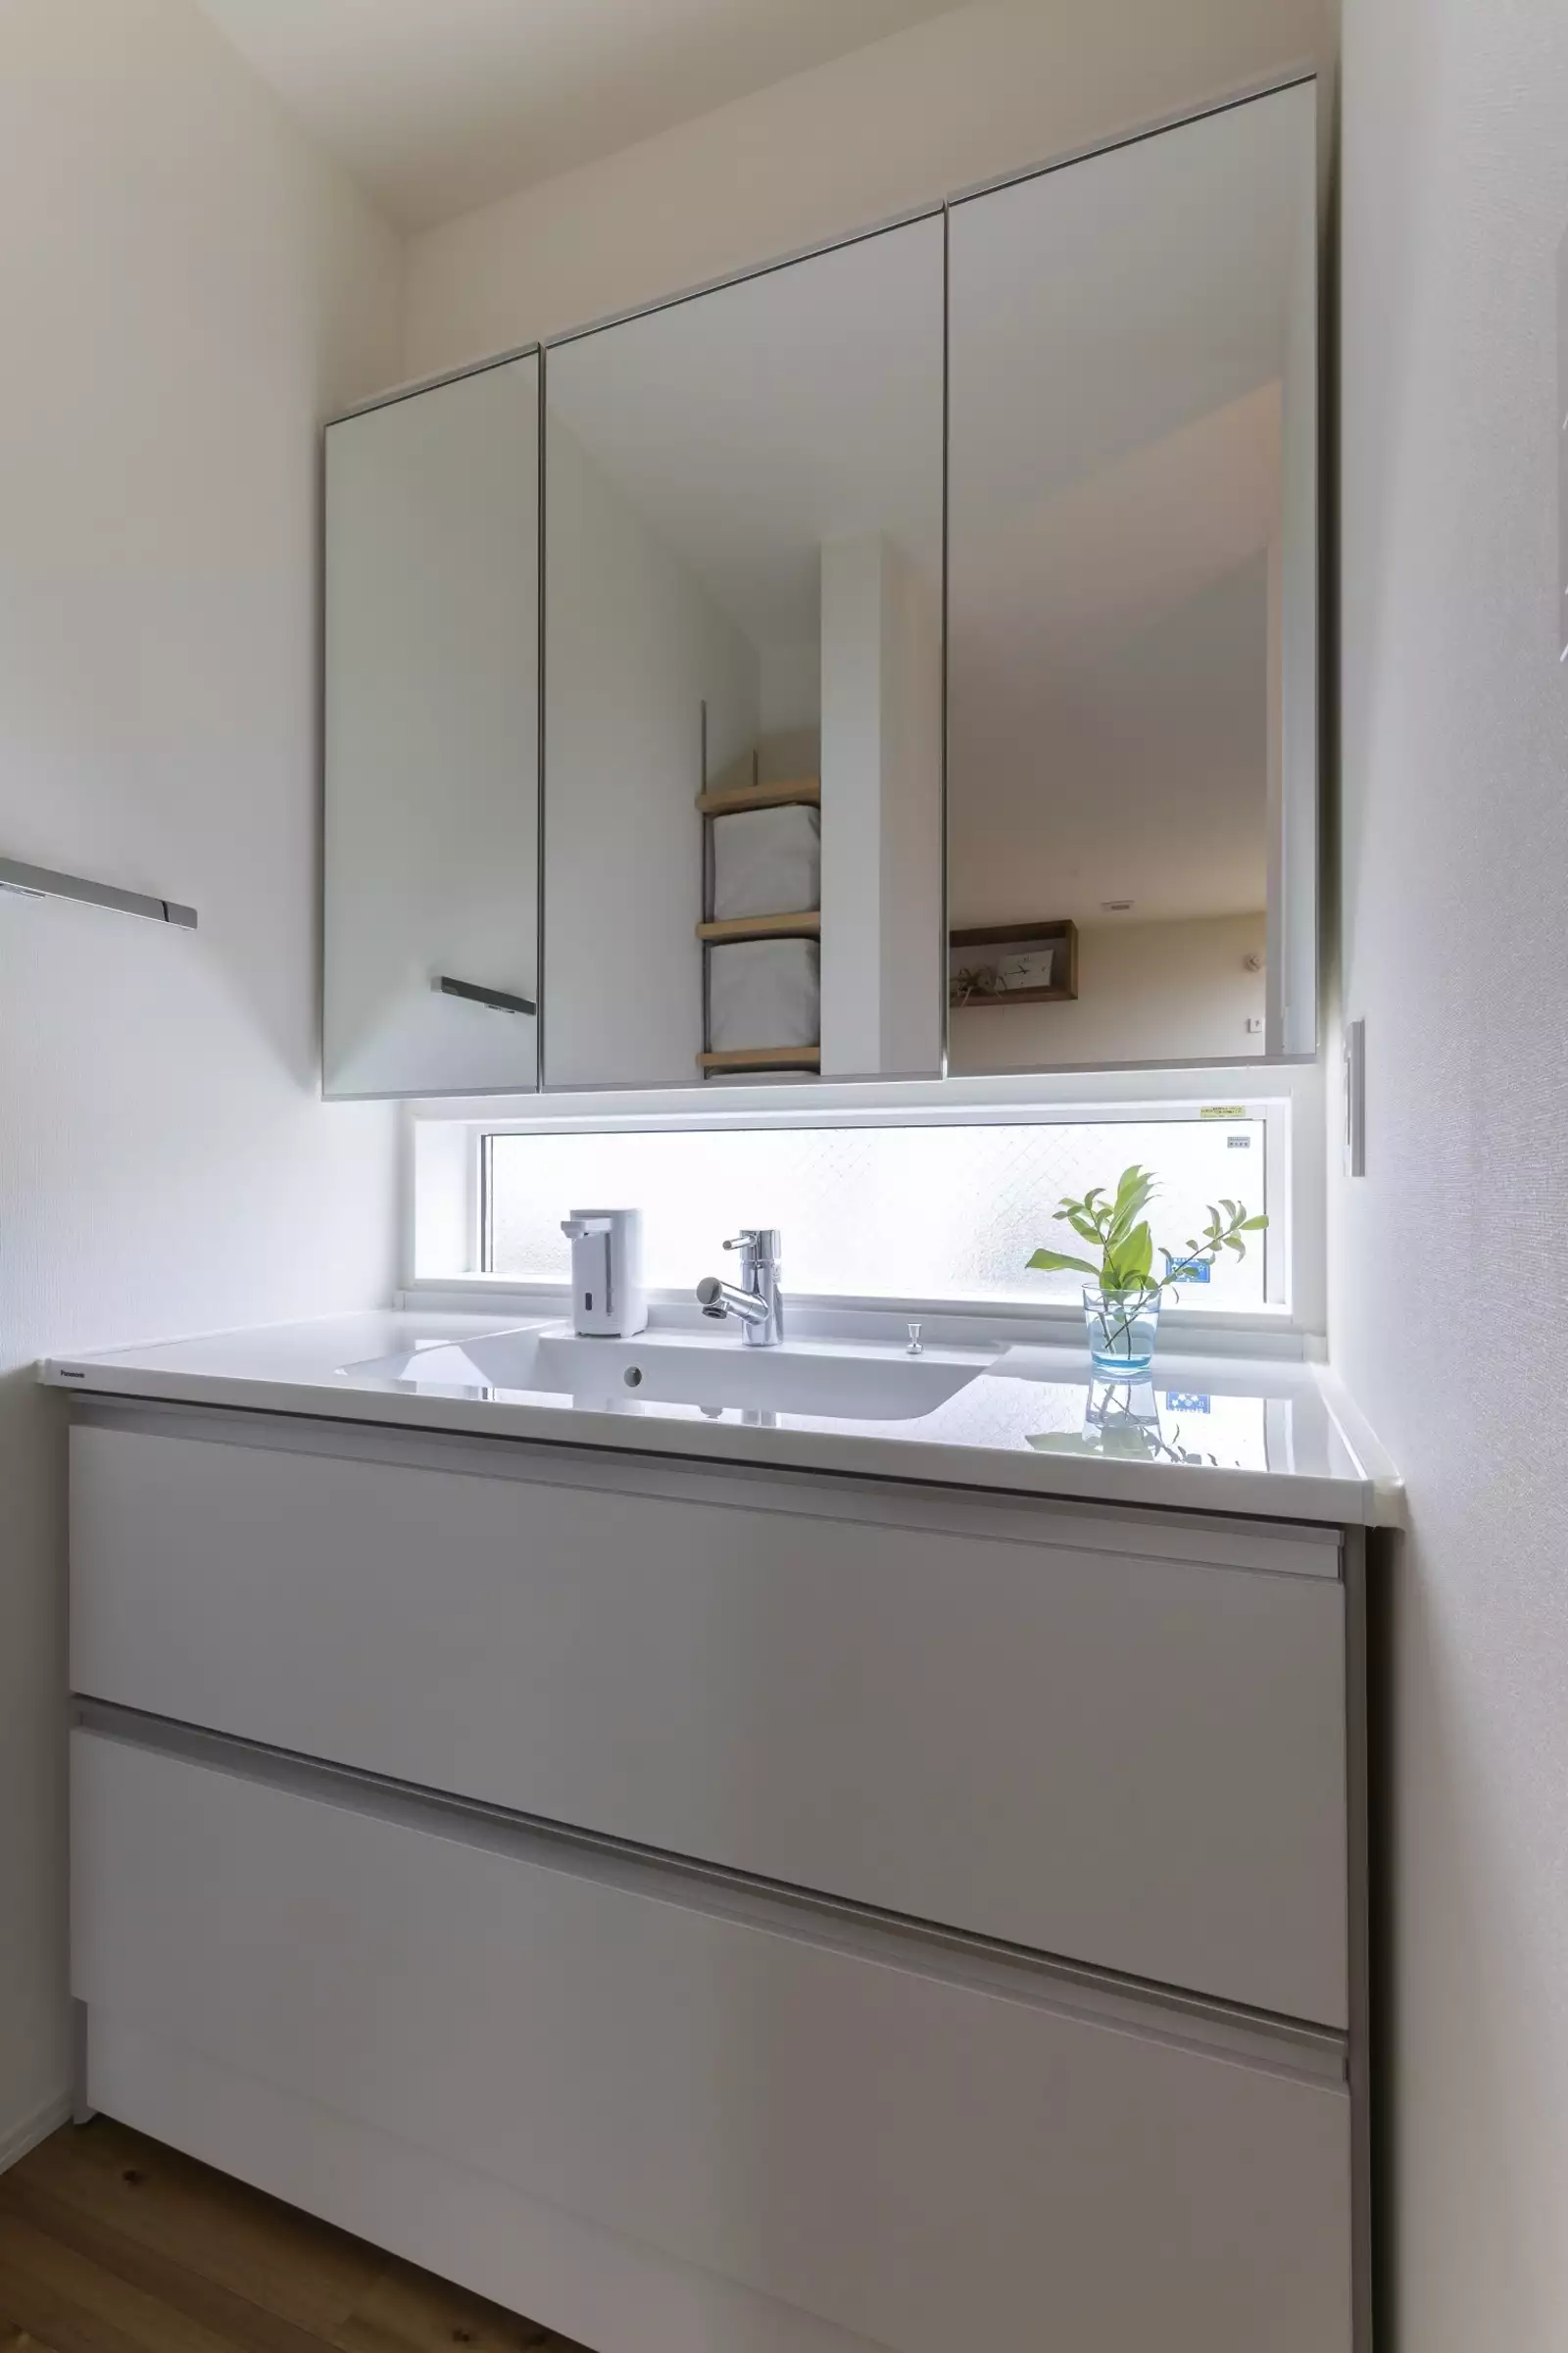 洗面室は白で統一。ミラーと洗面台の間にある窓がアクセント。